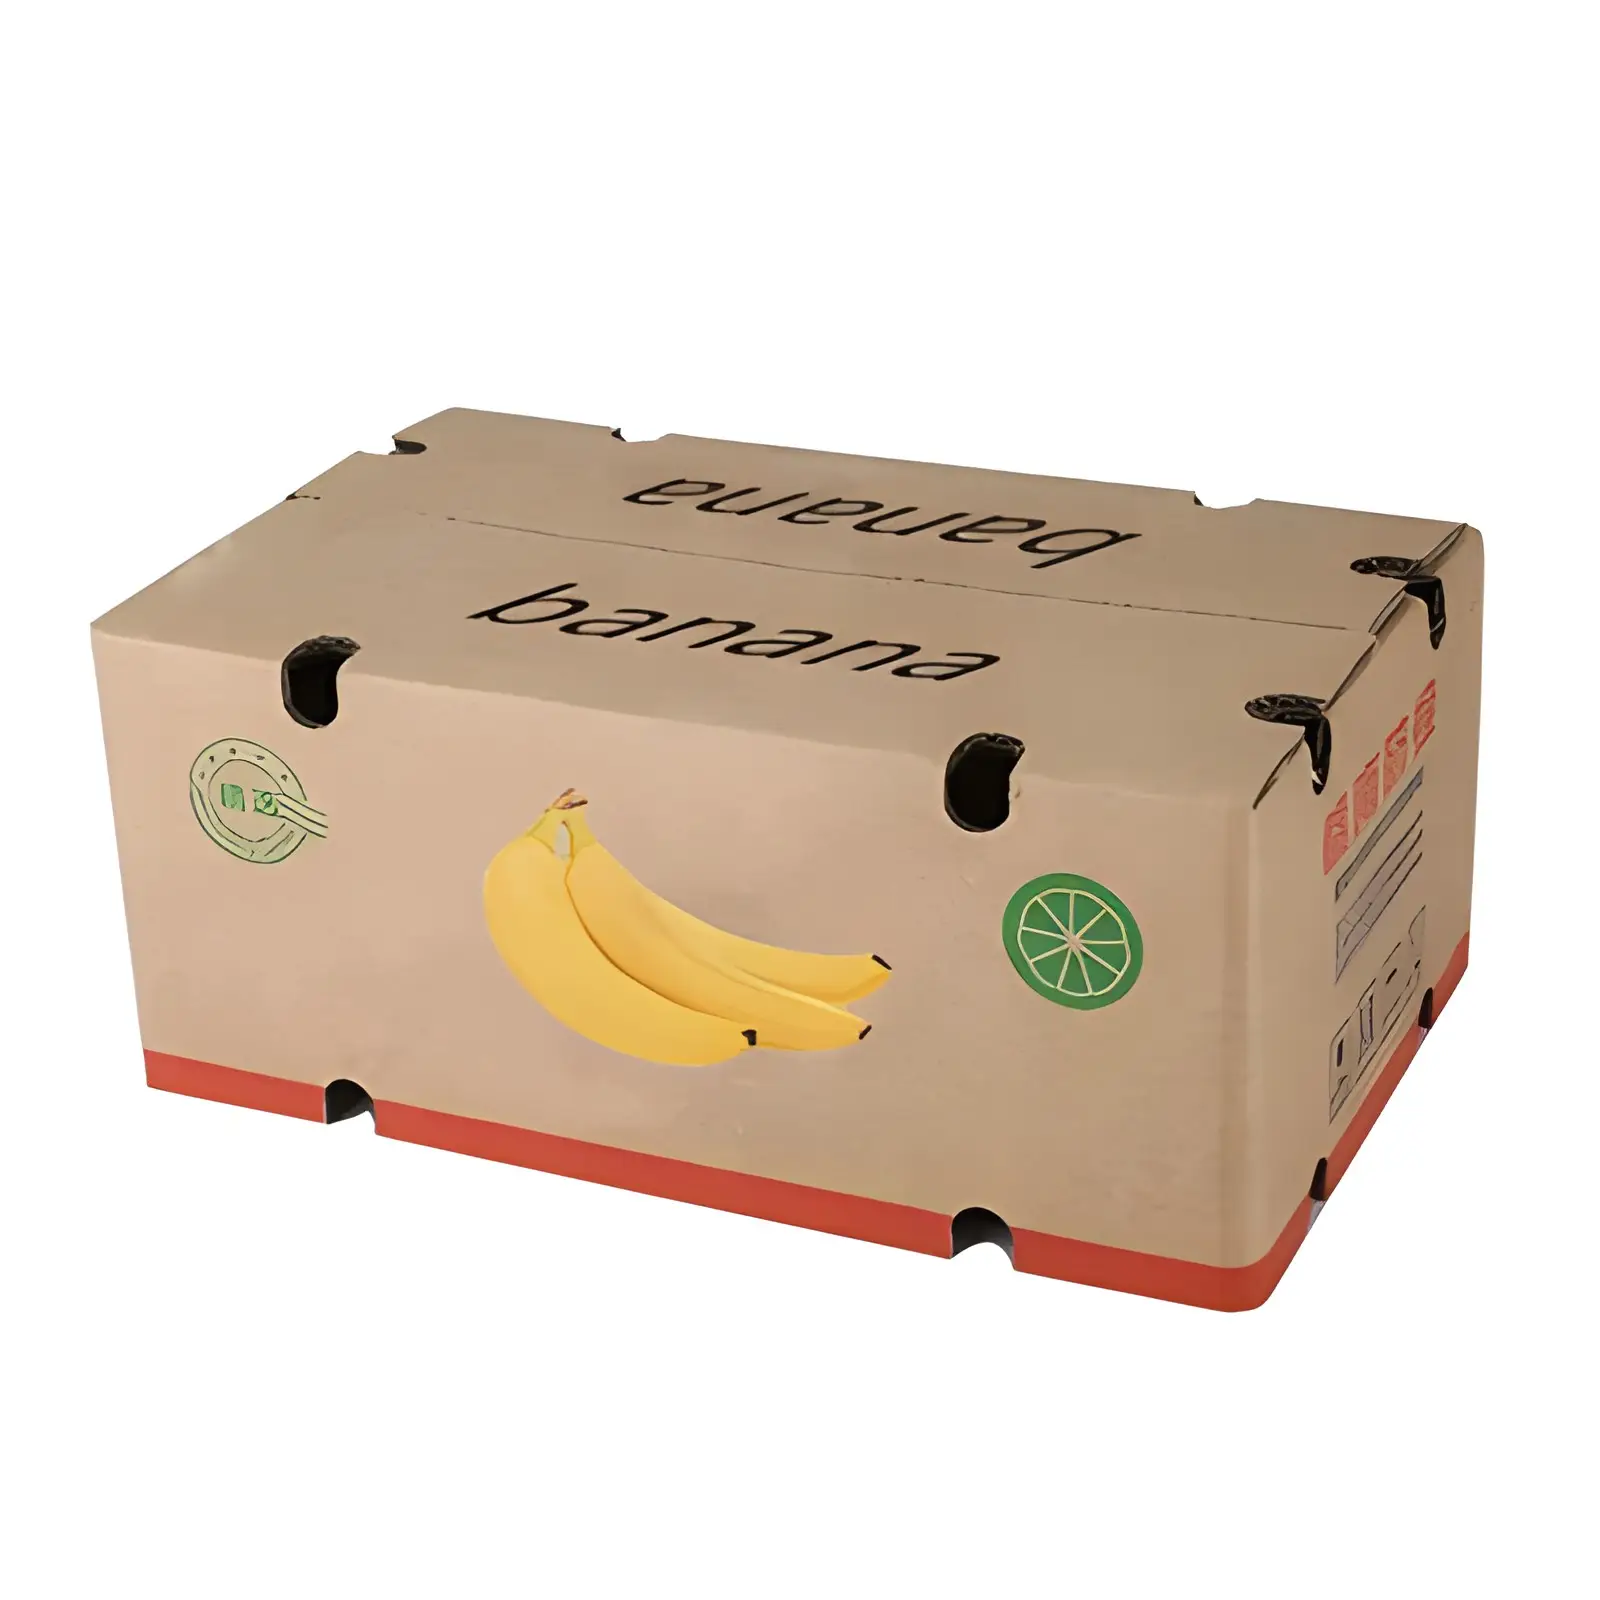 علبة تعبئة الموز للبيع بالجملة من المصنع صناديق كرتون مضلعة قوية قابلة لإعادة التدوير صناديق تعبئة من الكرتون